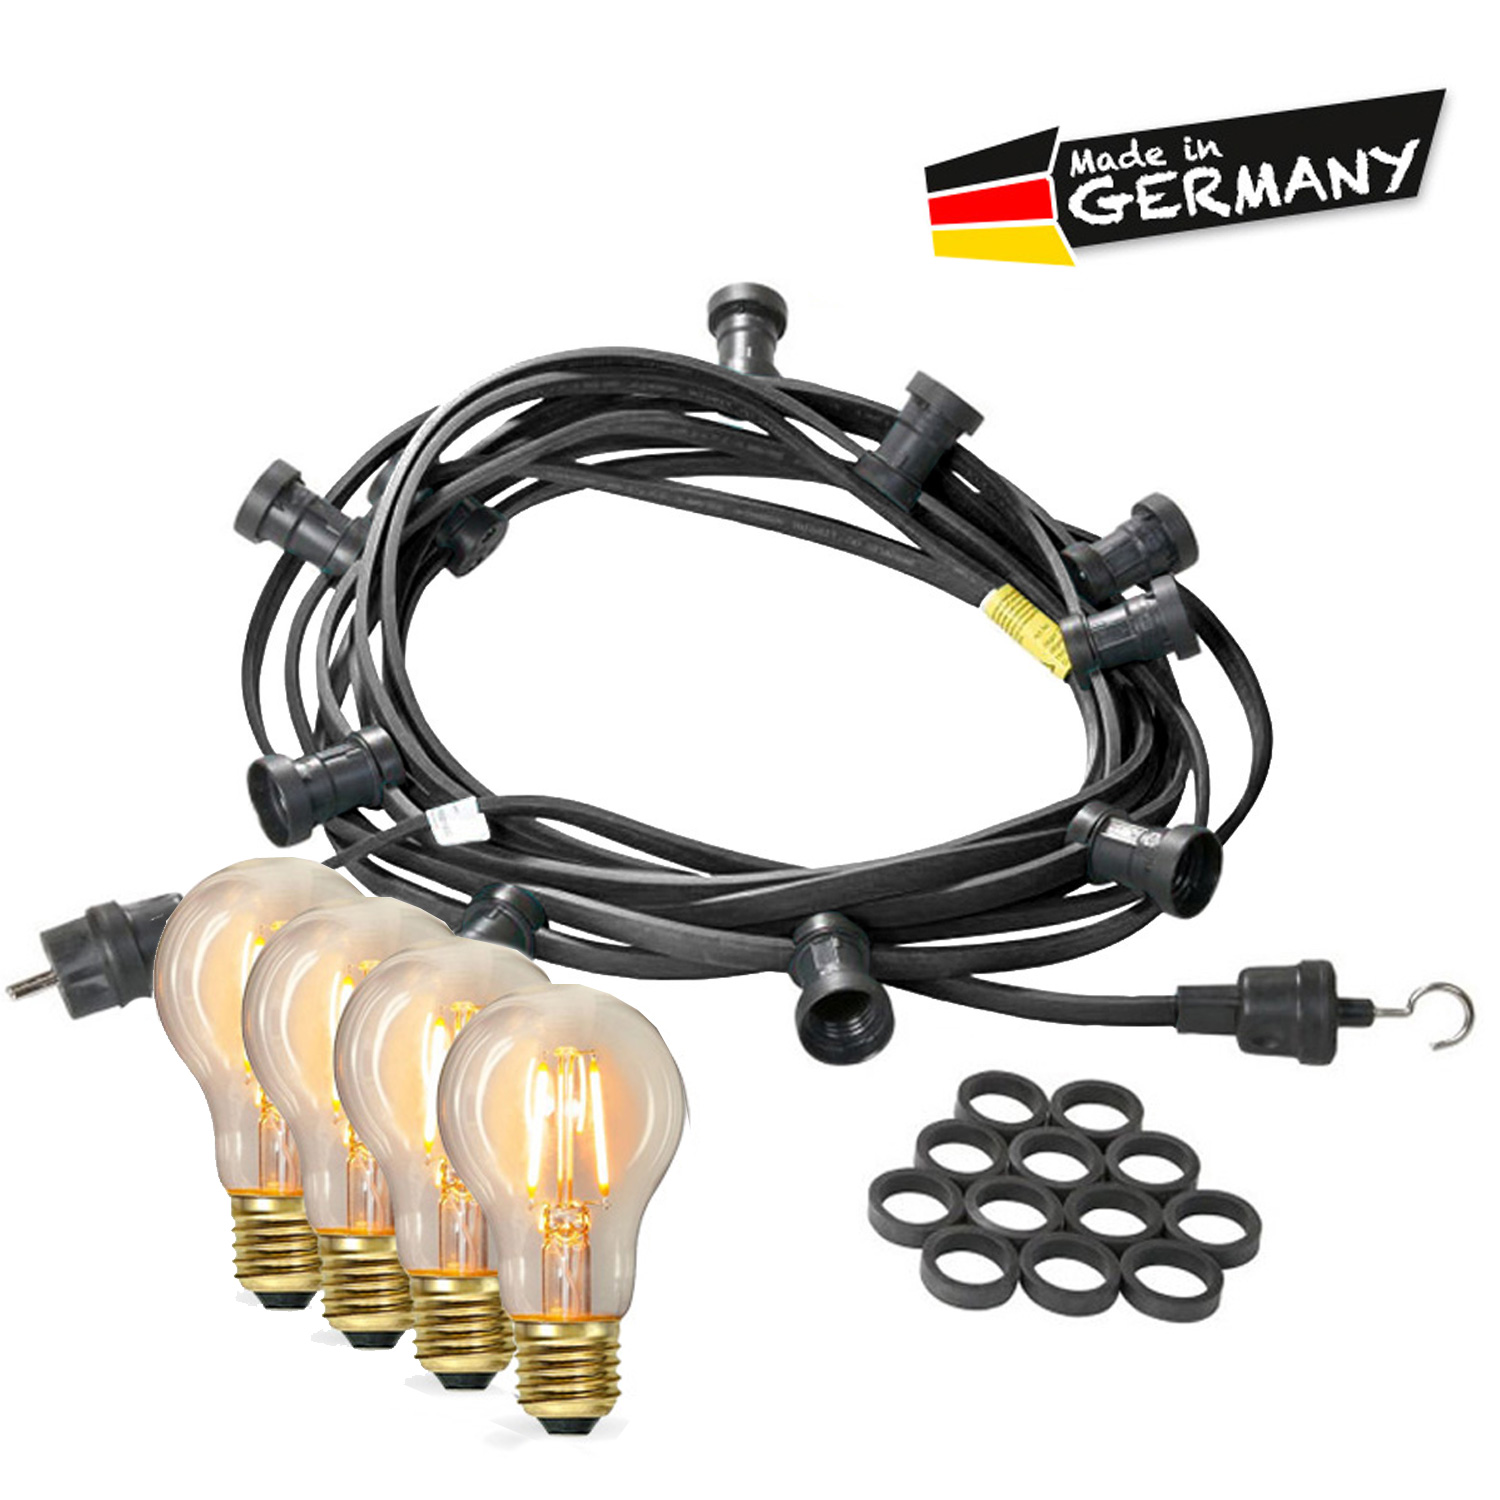 Illu-/Partylichterkette 10m - Außenlichterkette - Made in Germany - 20 x Edison LED Filamentlampen